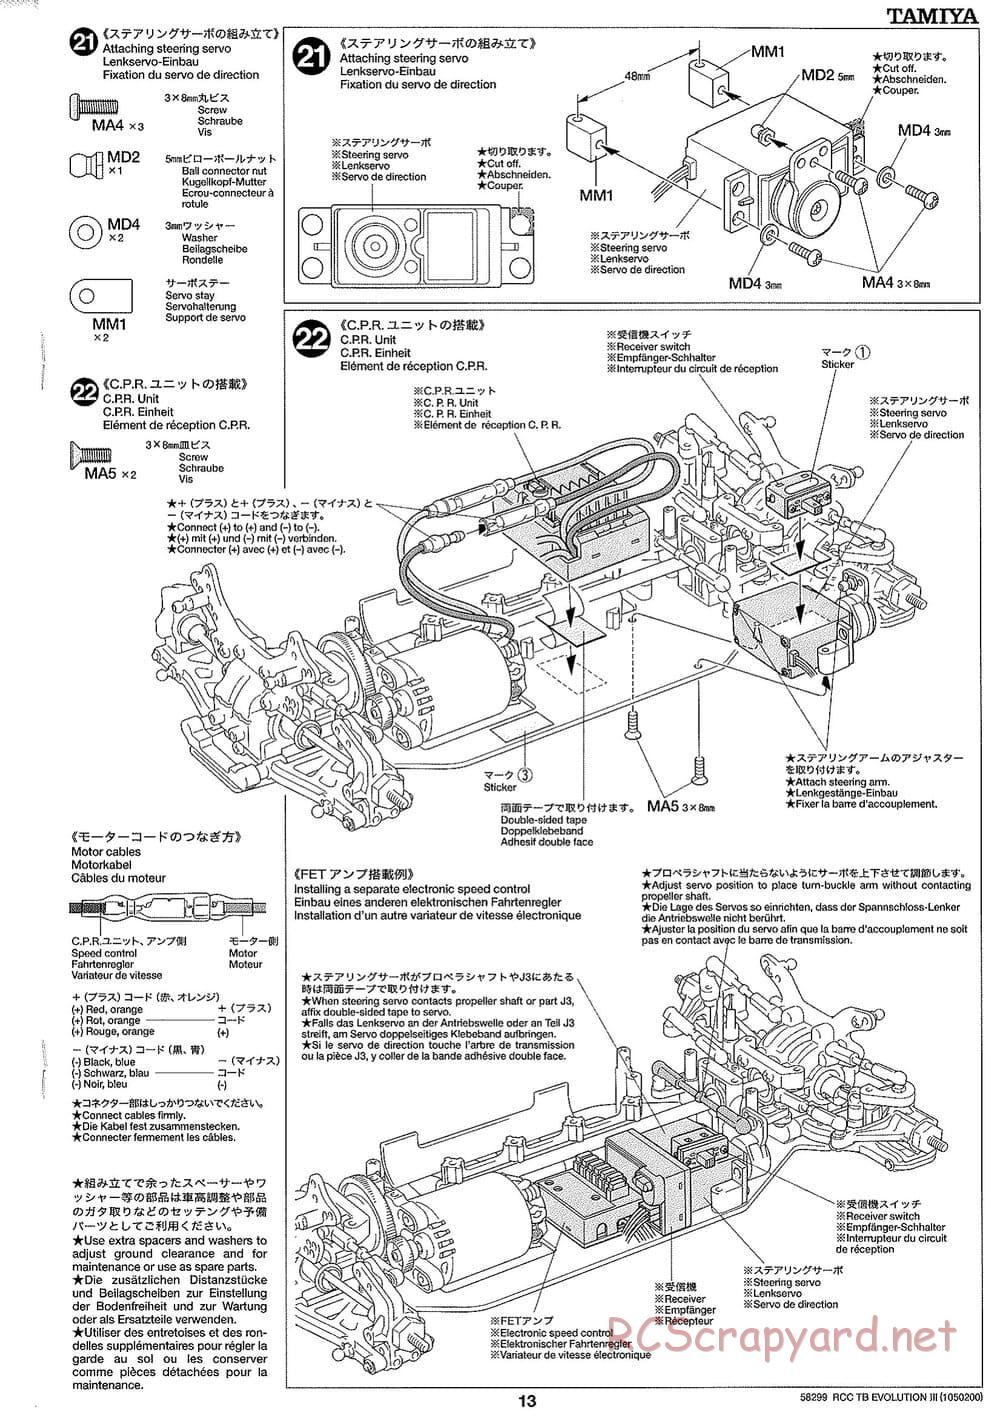 Tamiya - TB Evolution III Chassis - Manual - Page 14